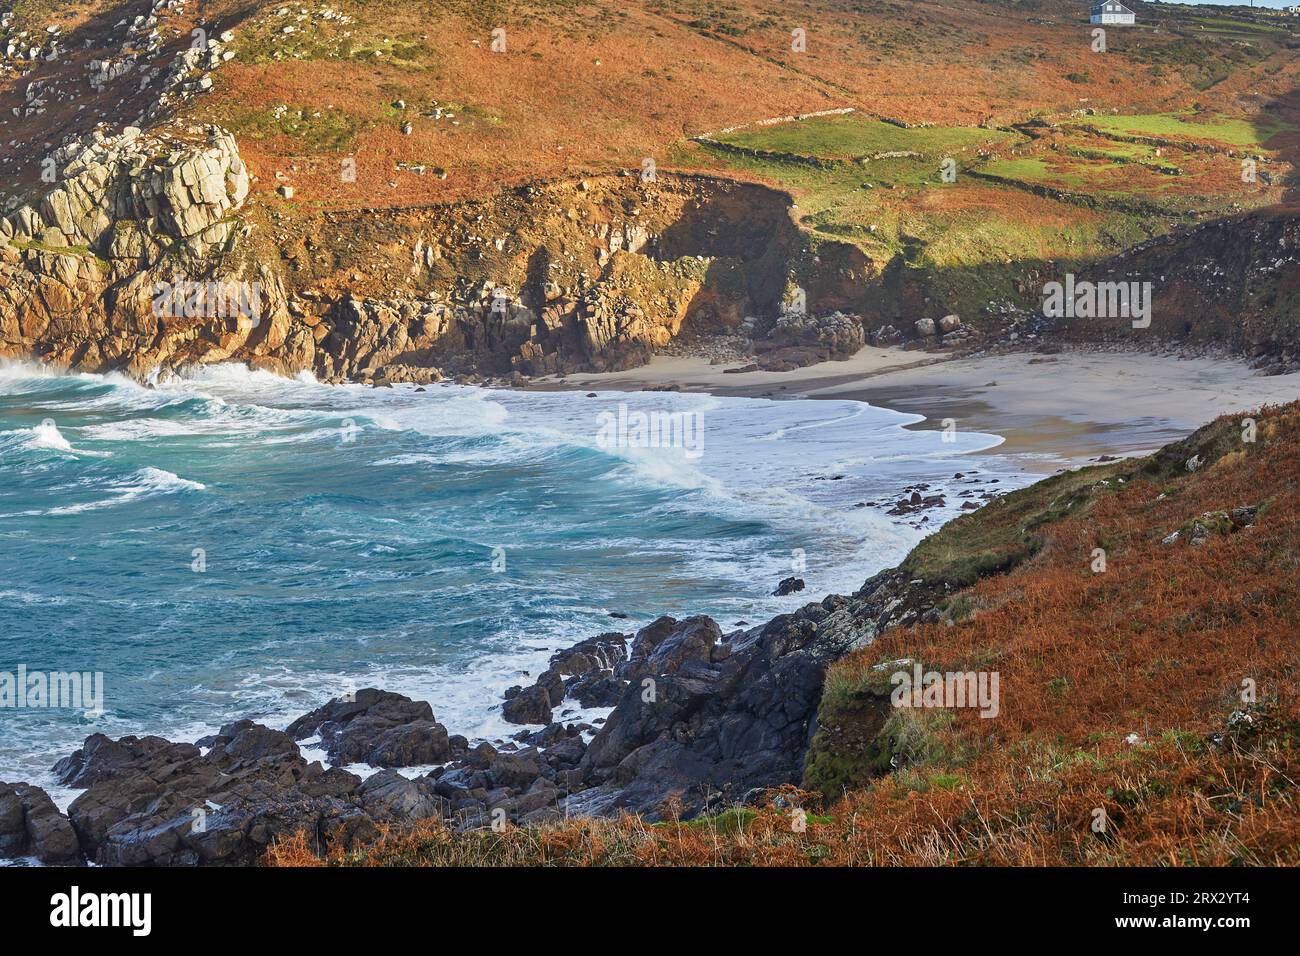 Les falaises et le sable de Portheras Cove, une plage éloignée près de Pendeen, sur les falaises abruptes de l'Atlantique à l'extrême ouest de Cornwall, en Angleterre Banque D'Images